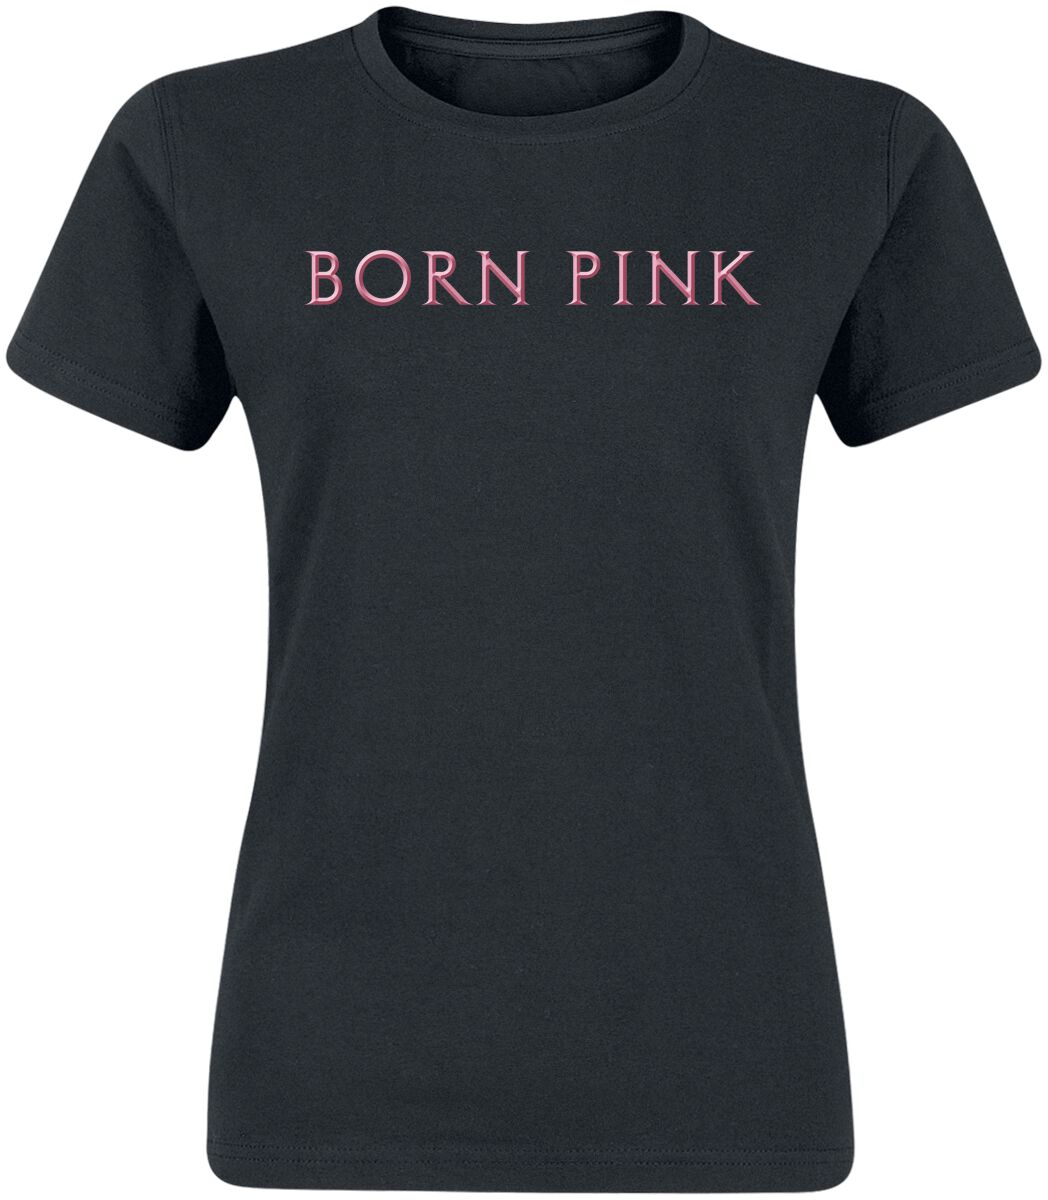 Blackpink T-Shirt - Born Pink - L bis XL - für Damen - Größe L - schwarz  - Lizenziertes Merchandise!